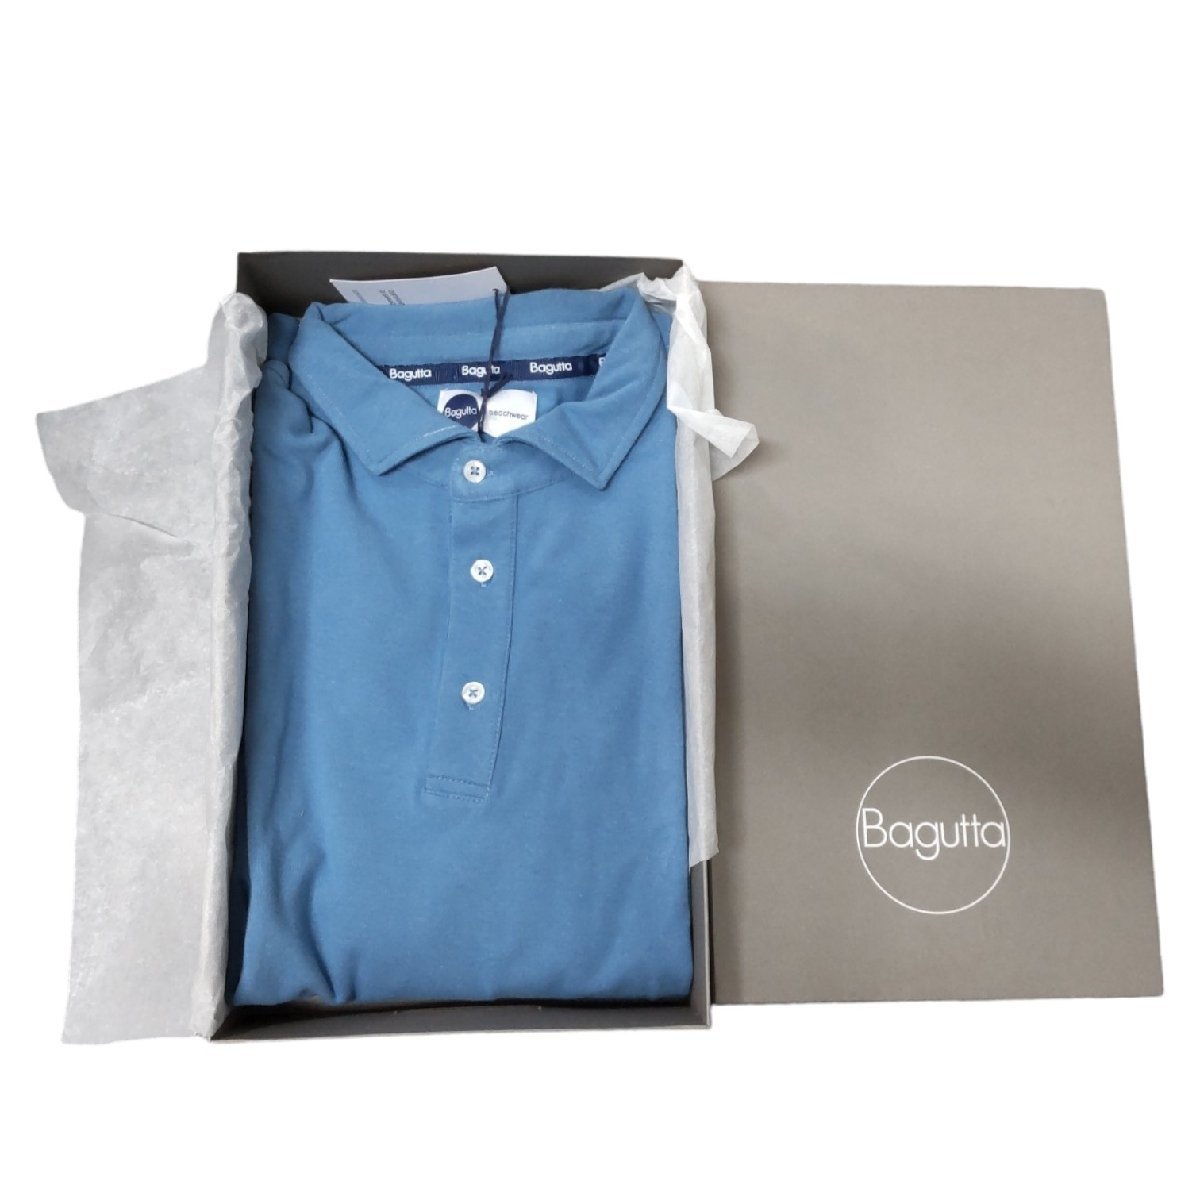 【未使用・保管品】 Bagutta バグッタ 半袖 シャツ ブルー メンズファッション M/Lサイズ 箱あり N51102RK